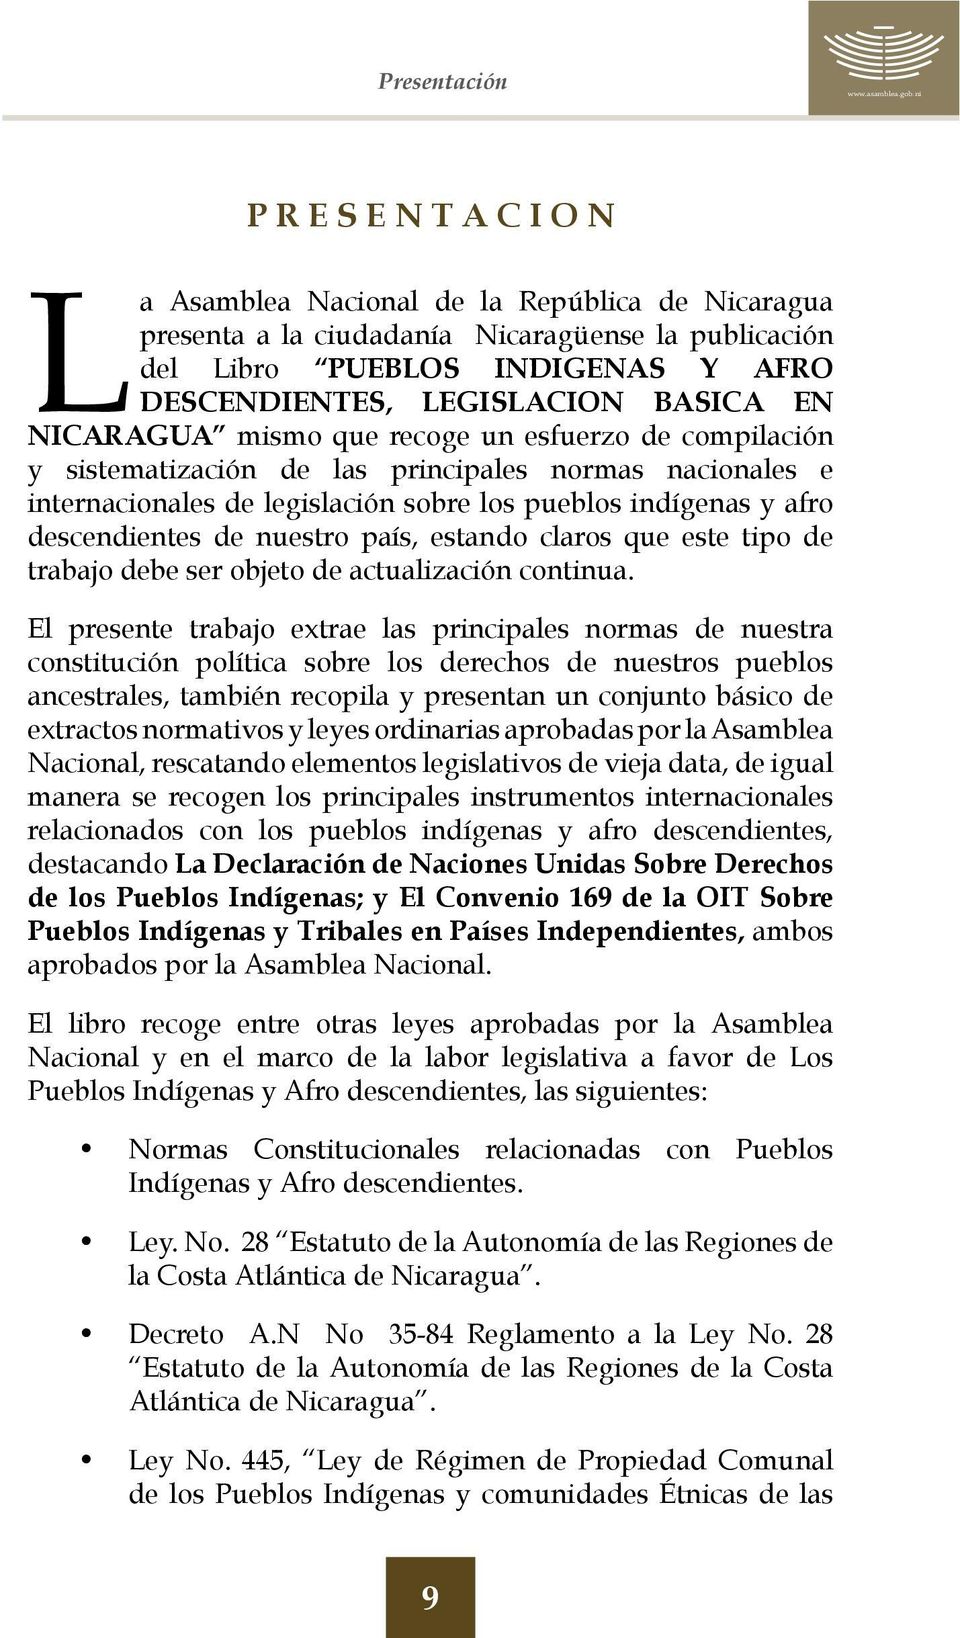 EN NICARAGUA mismo que recoge un esfuerzo de compilación y sistematización de las principales normas nacionales e internacionales de legislación sobre los pueblos indígenas y afro descendientes de